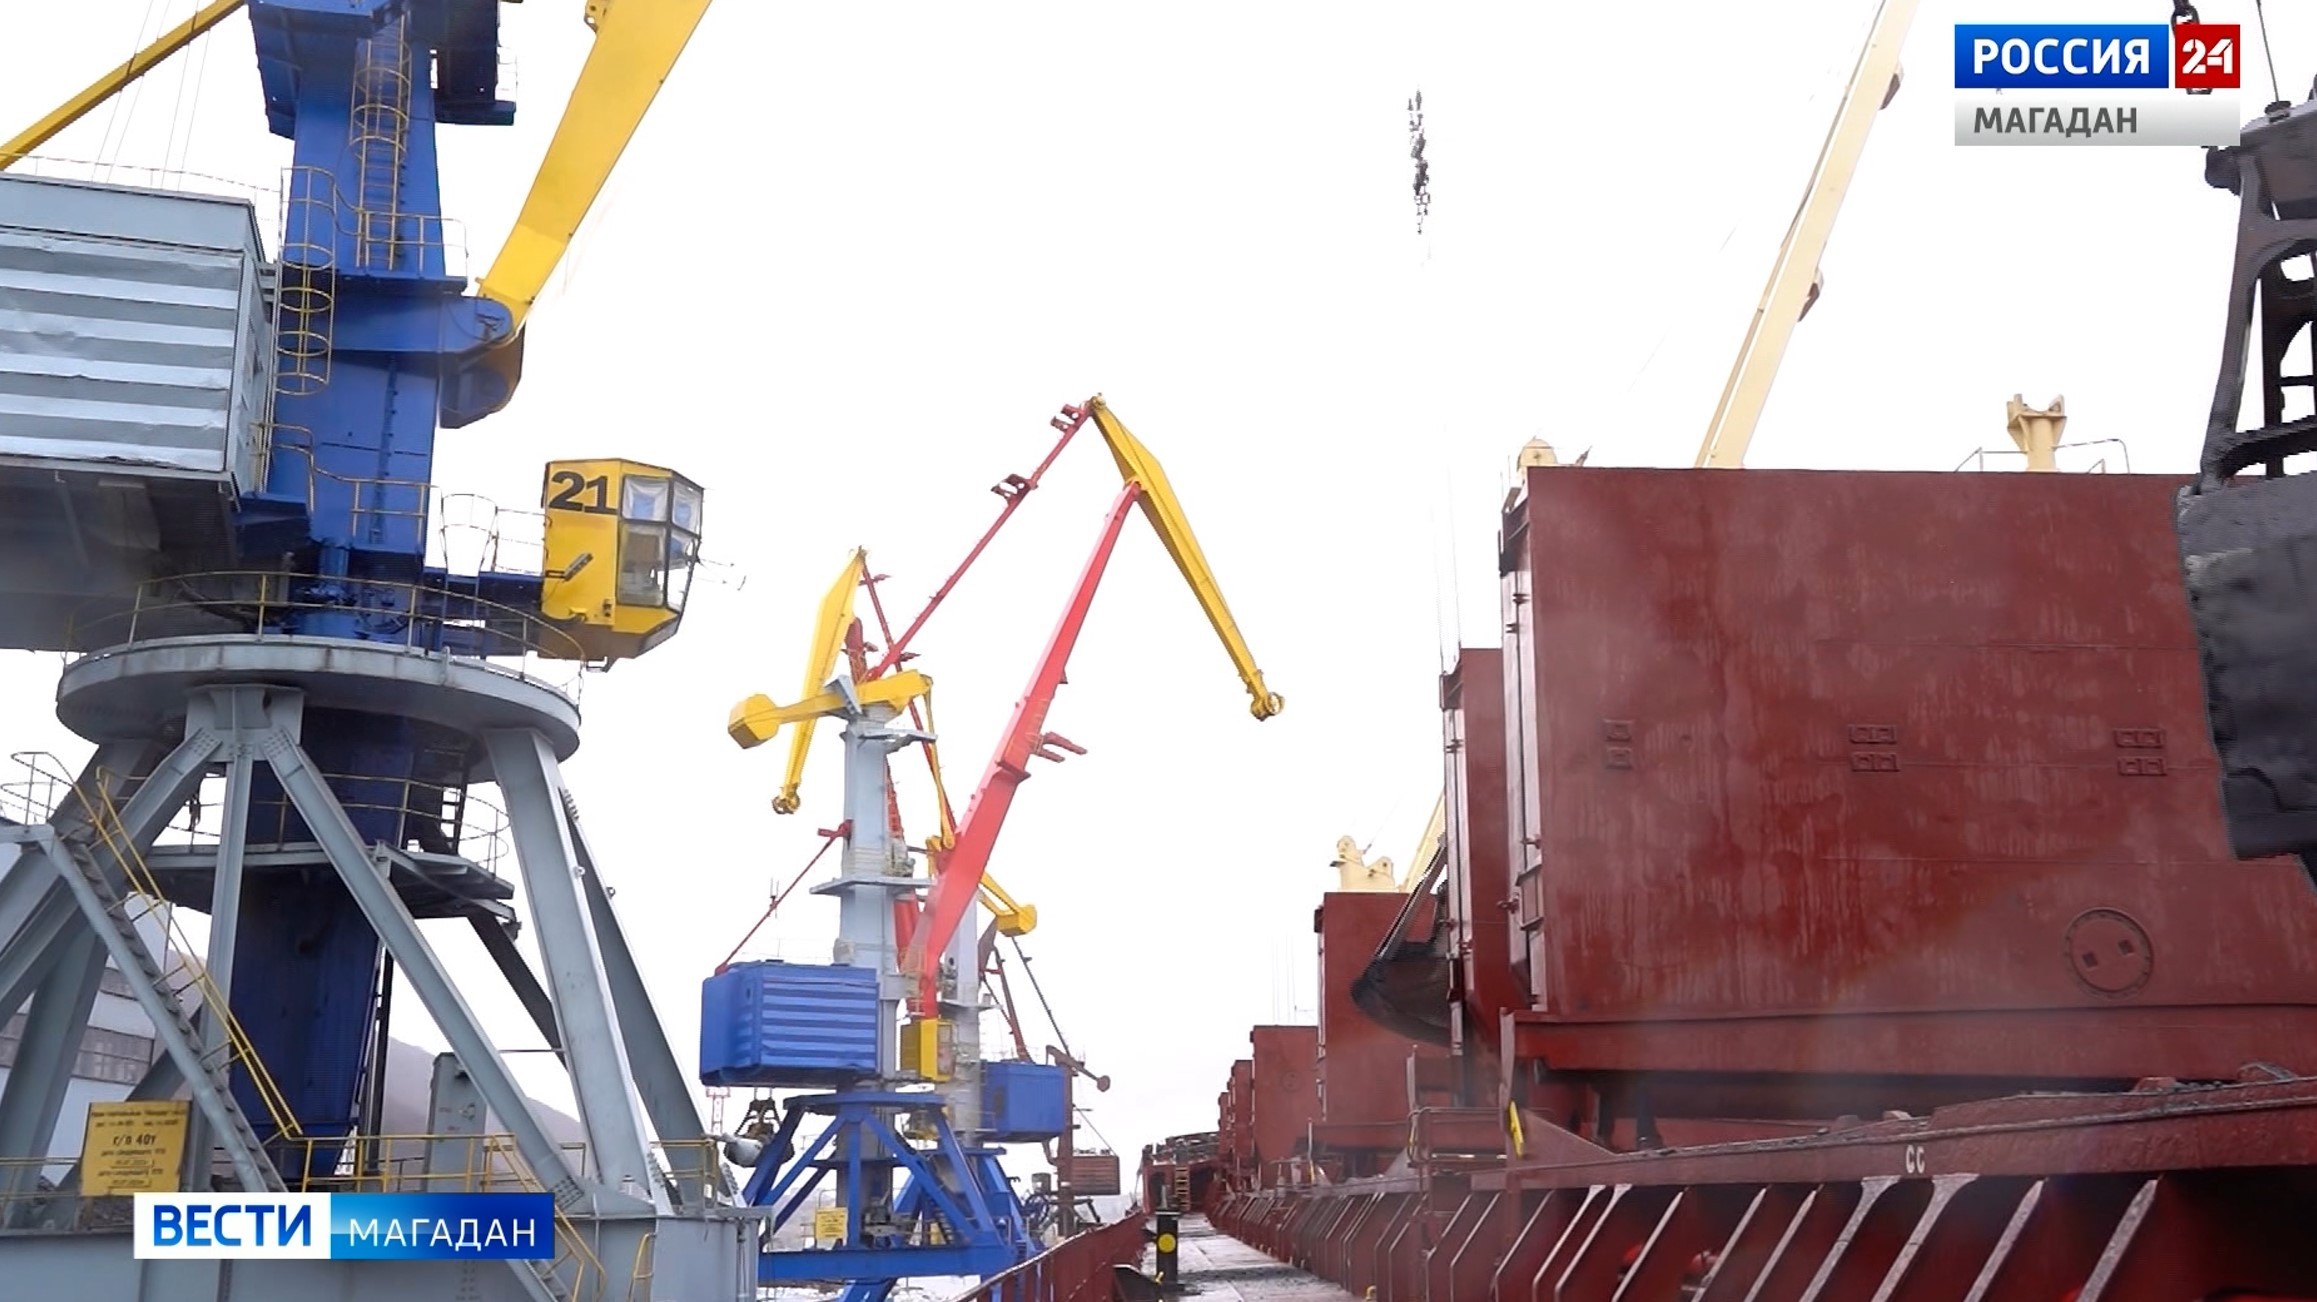 Теплоход «Омолон» доставил 27 тысяч 300 тонн угля в порт Магадана